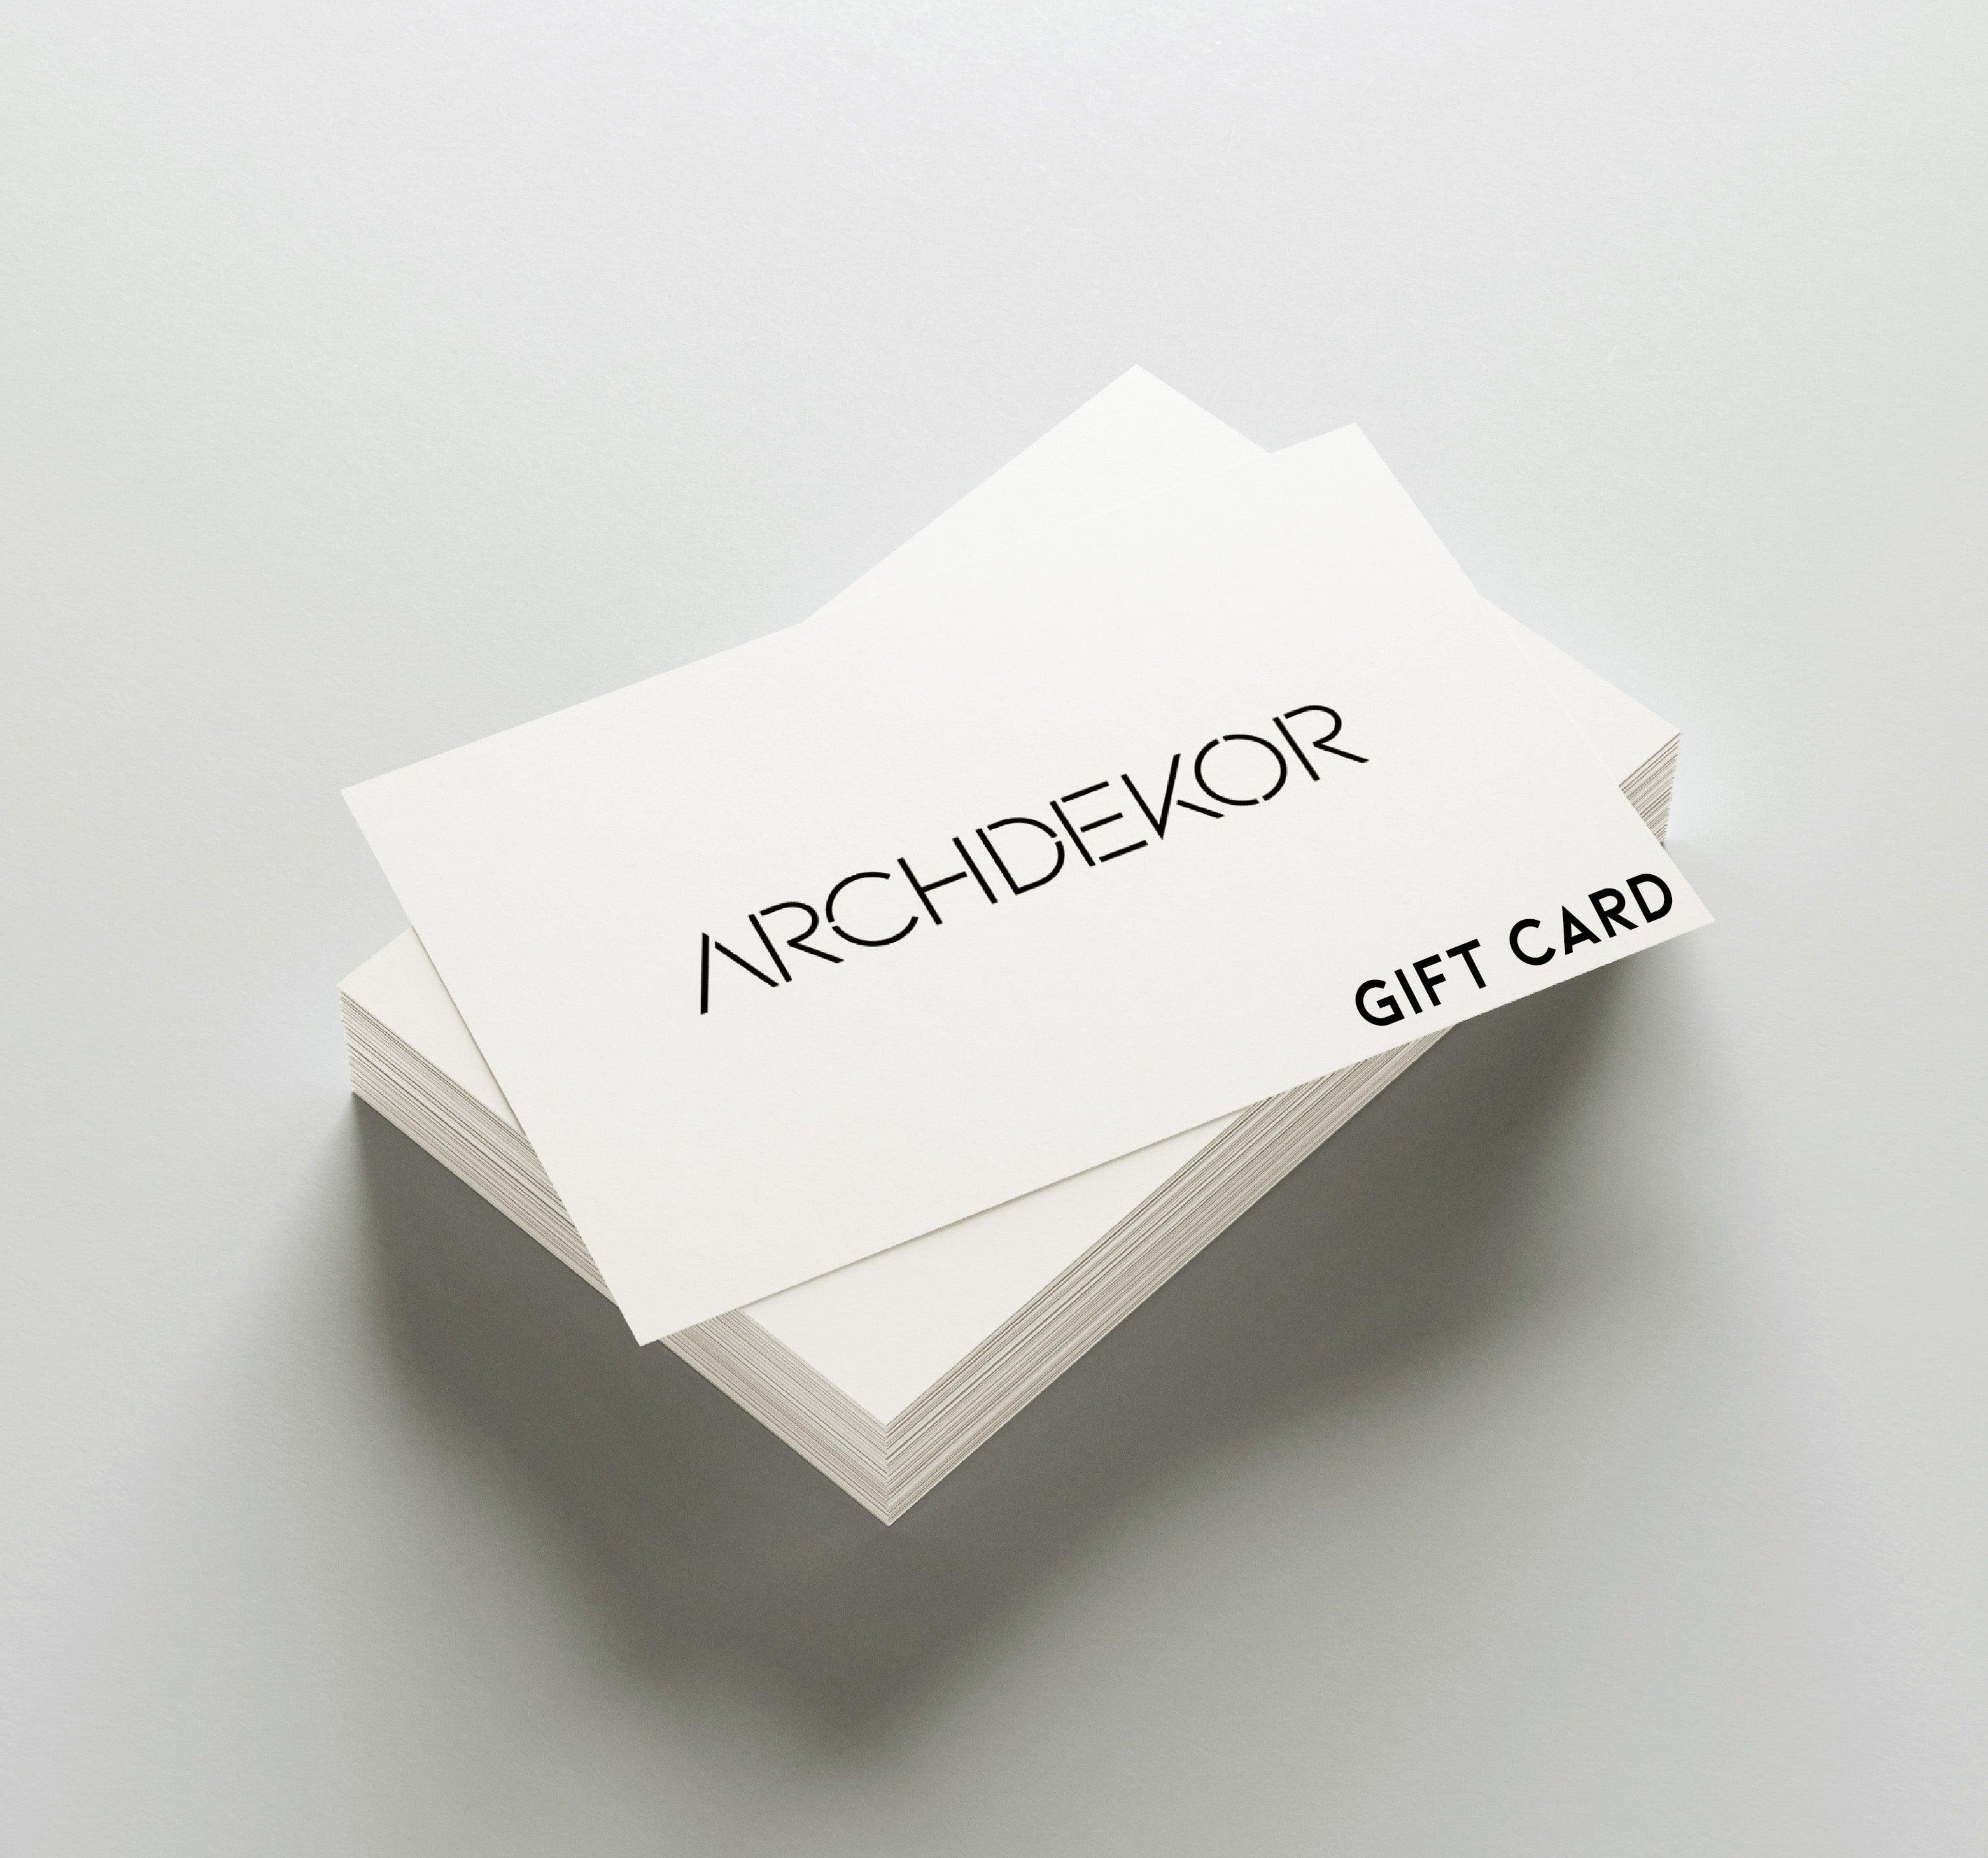 GIFT CARD / - ARCHDEKOR™ LLC